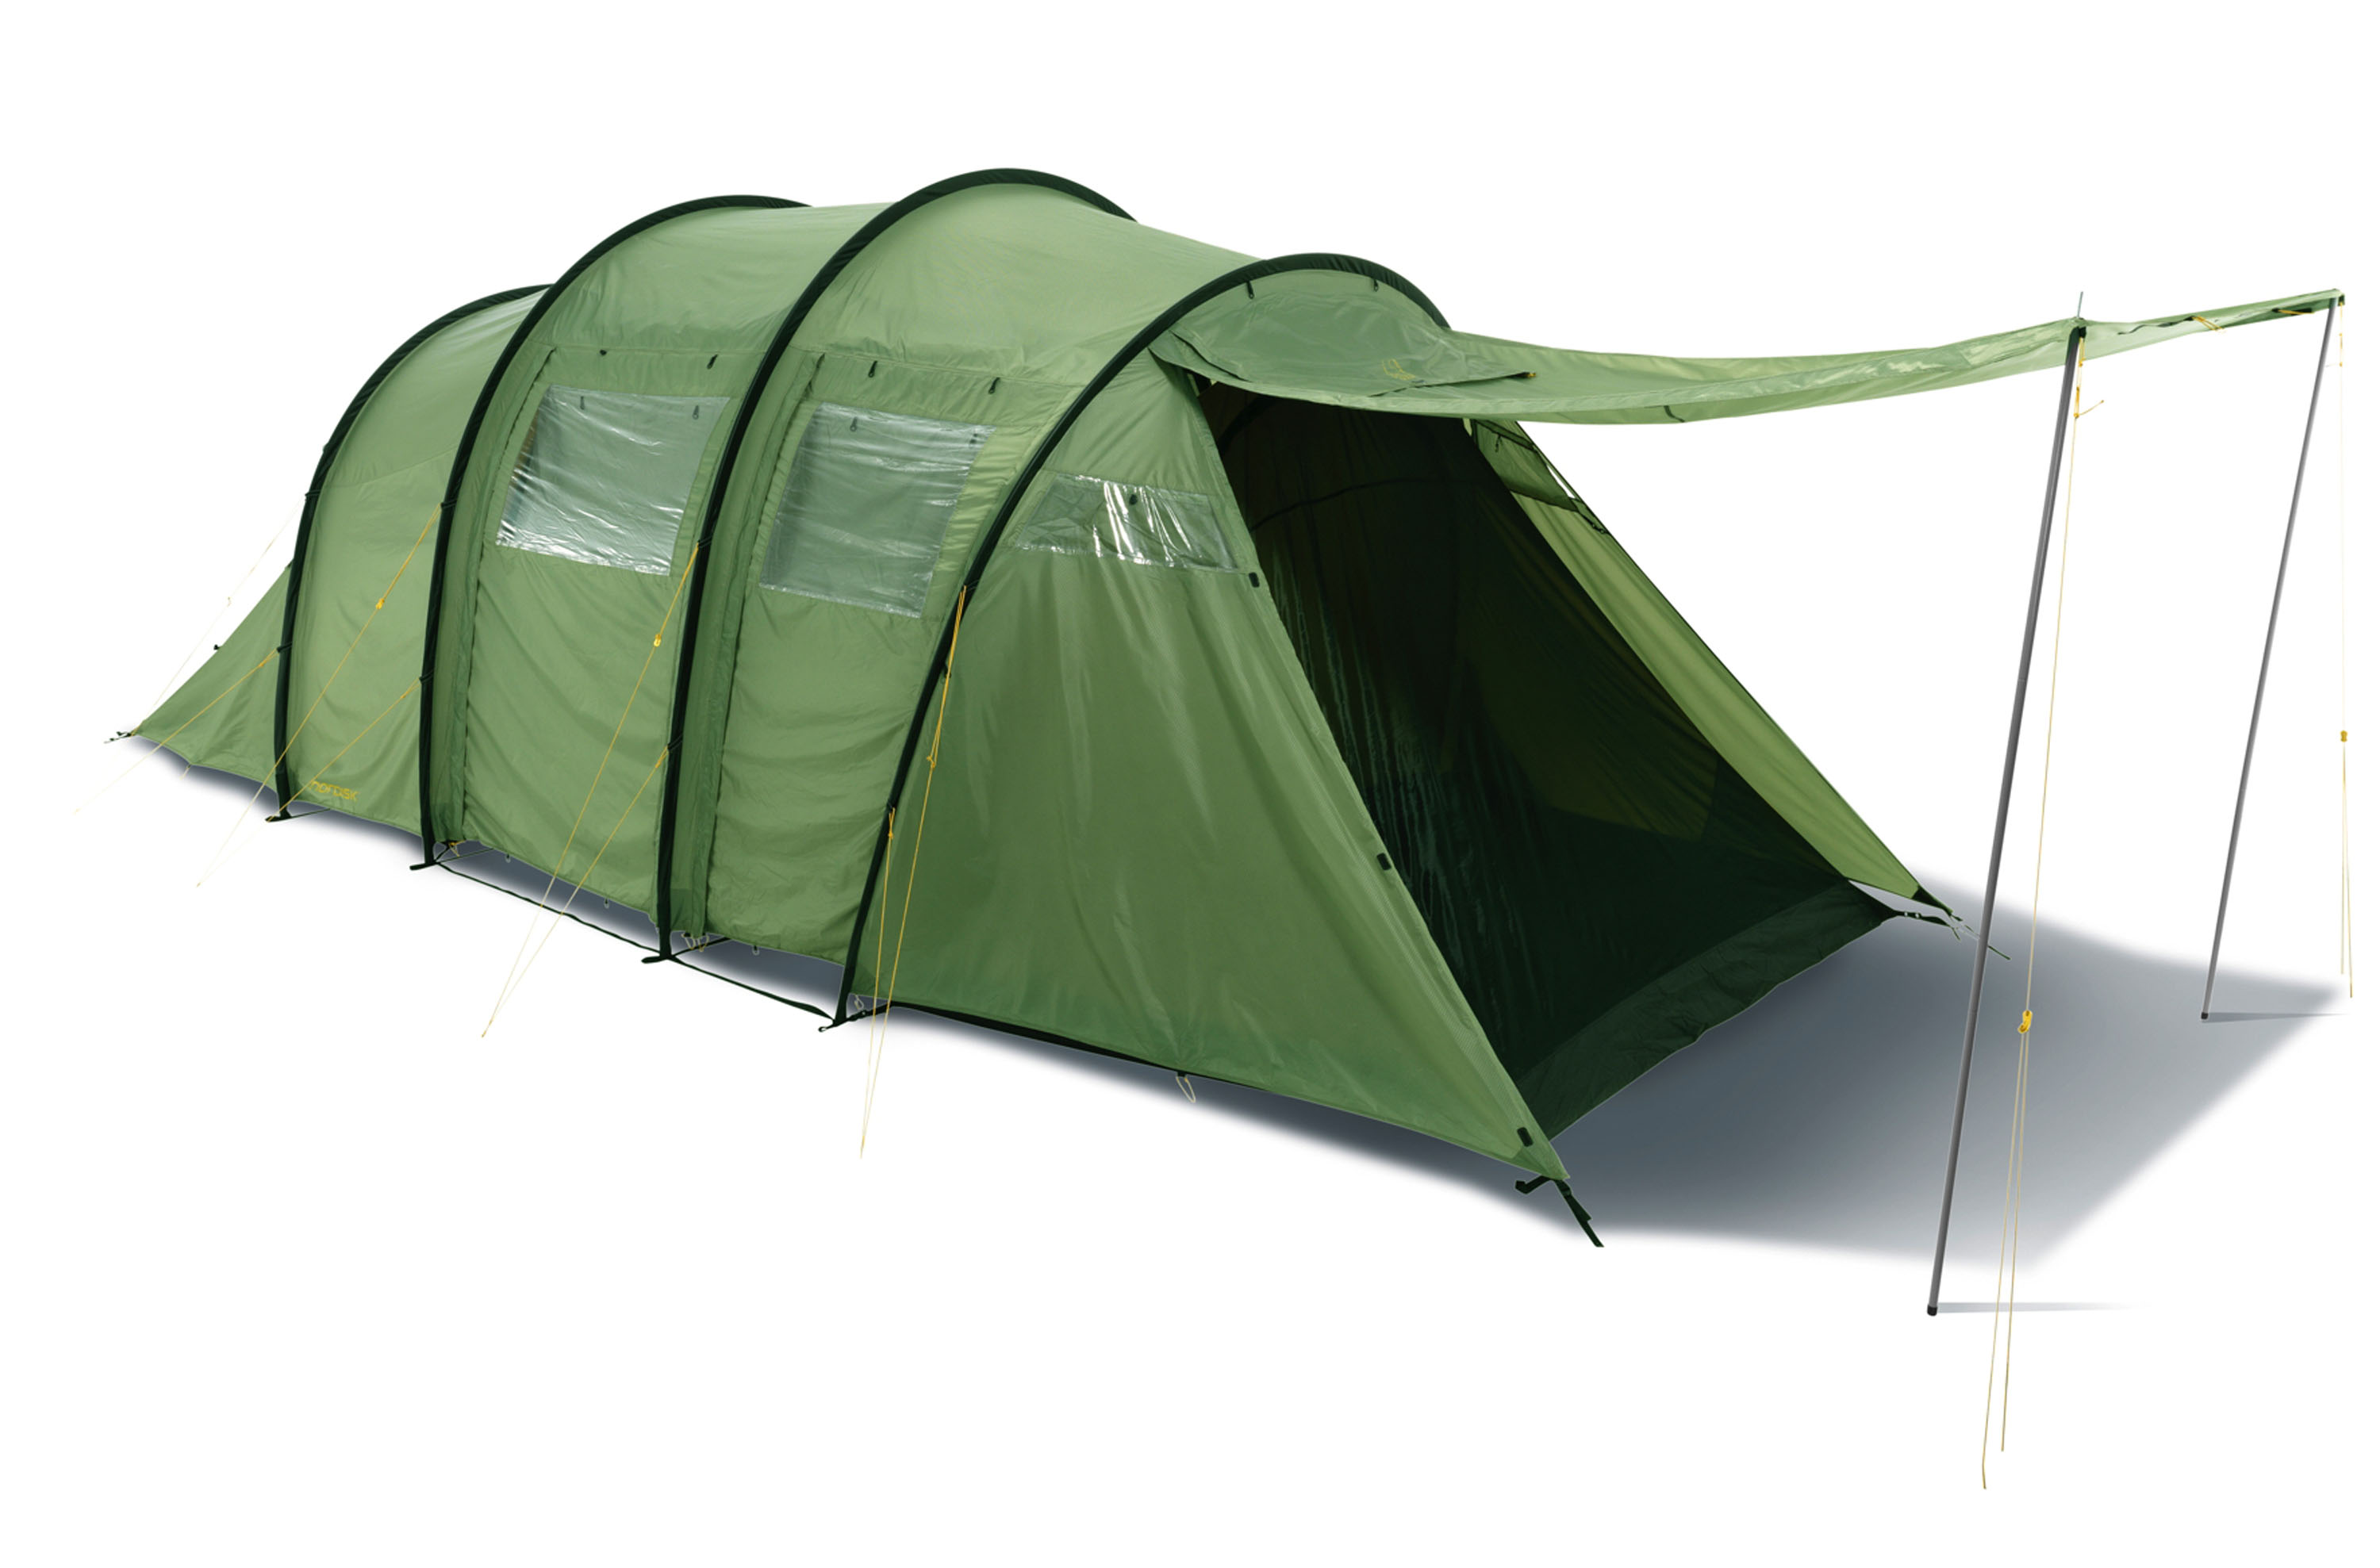 NORDISK Reisa 6 Zelt – Camping König. 6,5 m lang und 3 m breit ist schon eine satte Fläche für ein Zelt. Dafür kann man darin auch zu sechst leben und den Urlaub genießen. Gewicht: 17 kg. € 849,00 © Nordisk